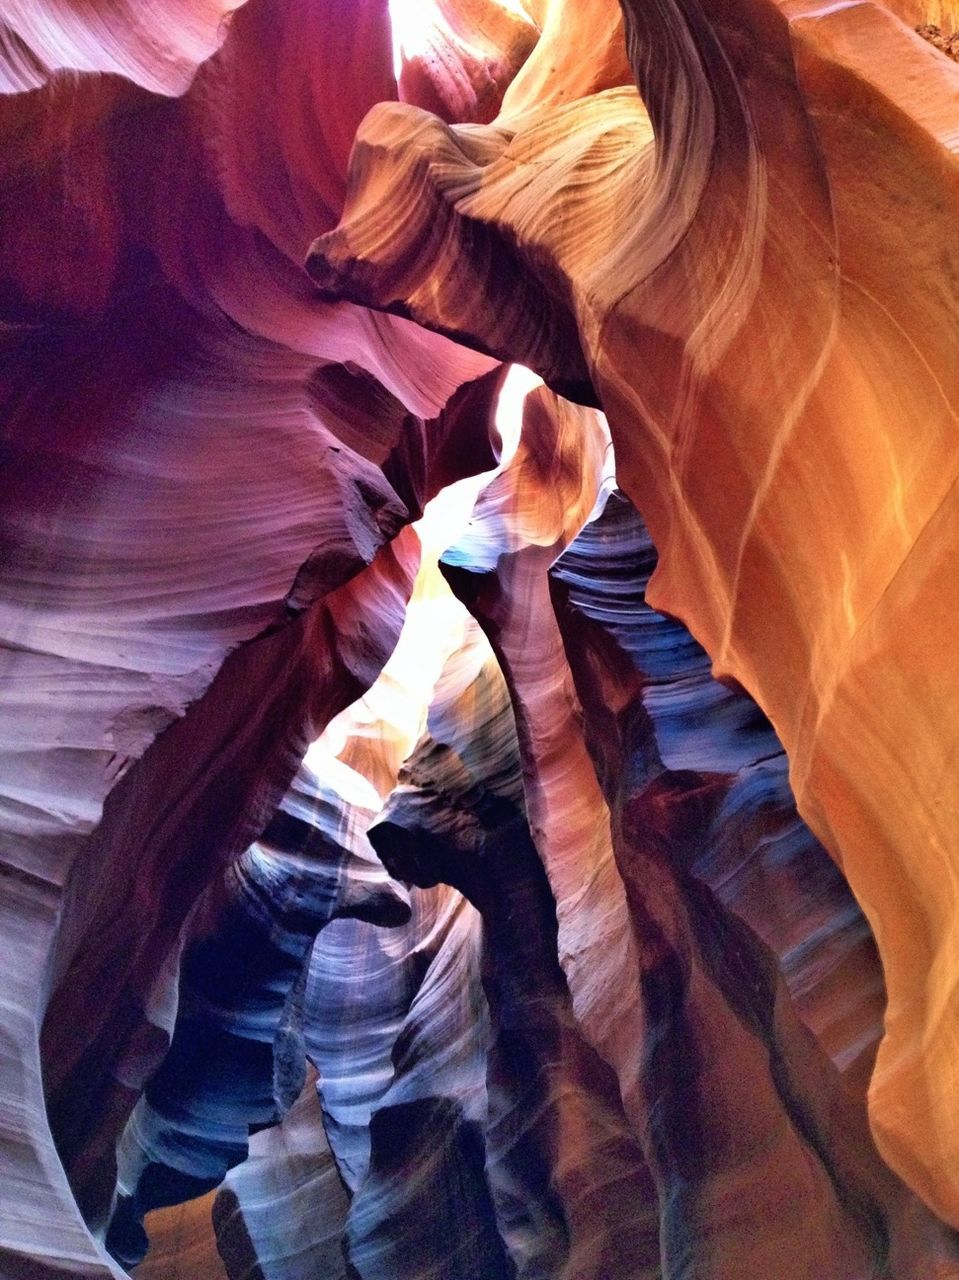 Rock formations at antelope canyon